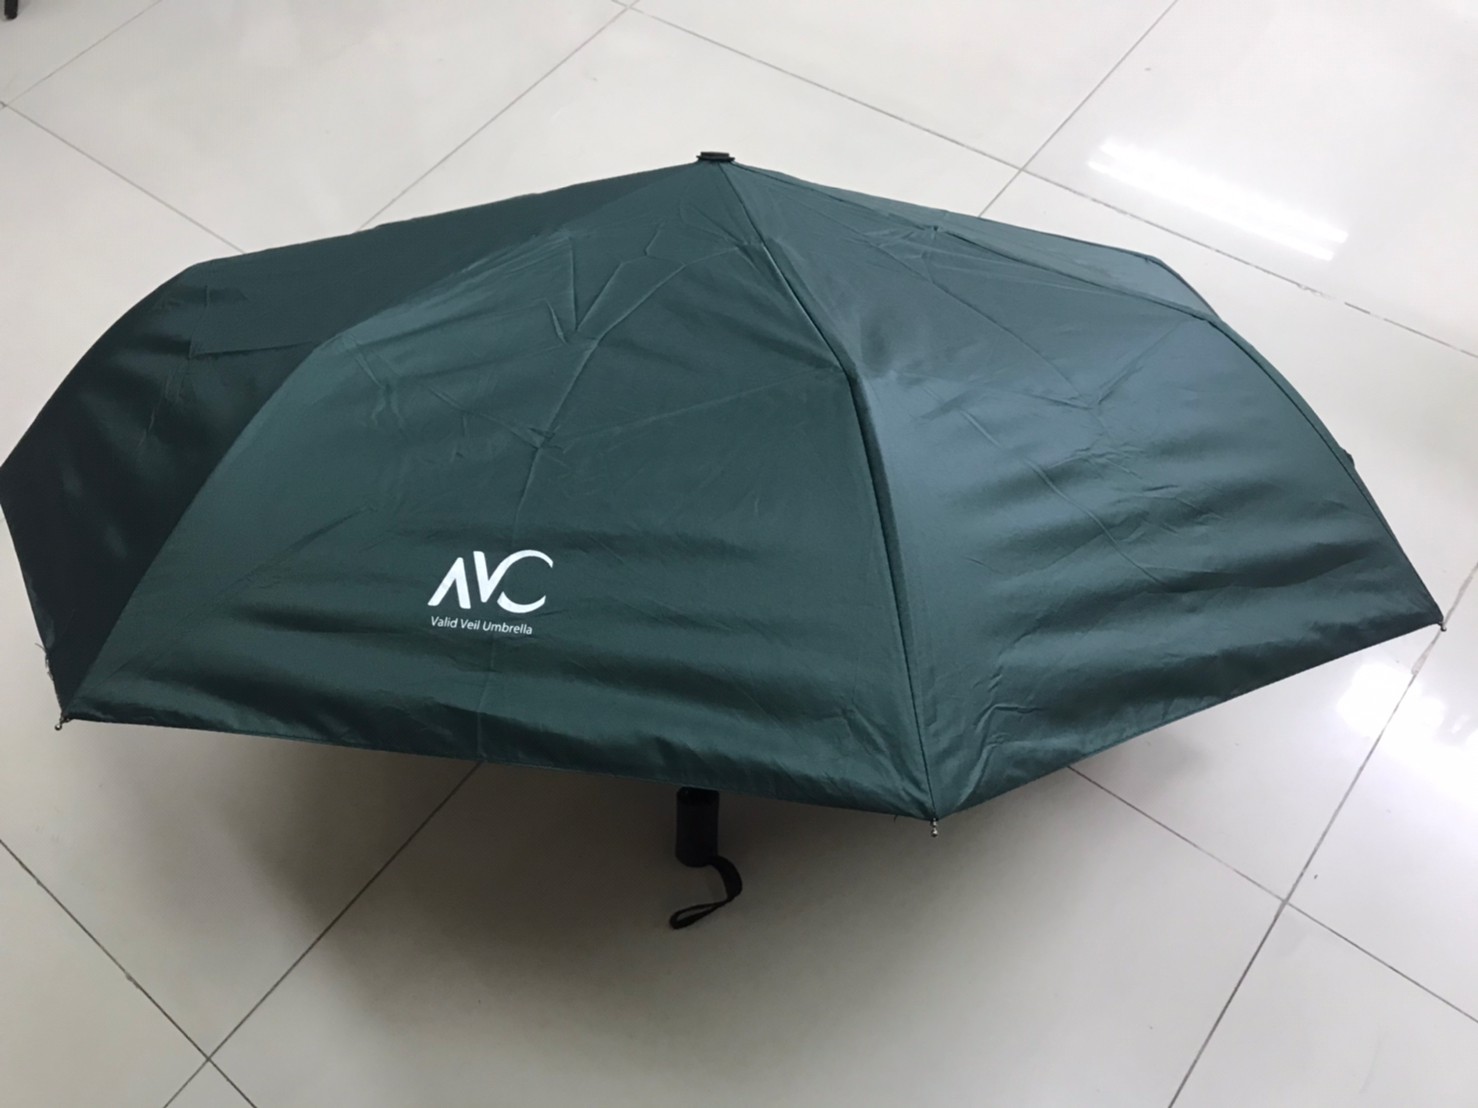 ร่มกันฝน Umbrella ร ร่มแฟชั่น ร่มกันแดด กันUV ร่มพับได้น้ำหนักเบาพกพาสะดวก ผ้าร่ม ทอแบบหนากว่าปกติป้องกันแสงยูวีได้อย่างดี น้ำไม่ซึม VAC